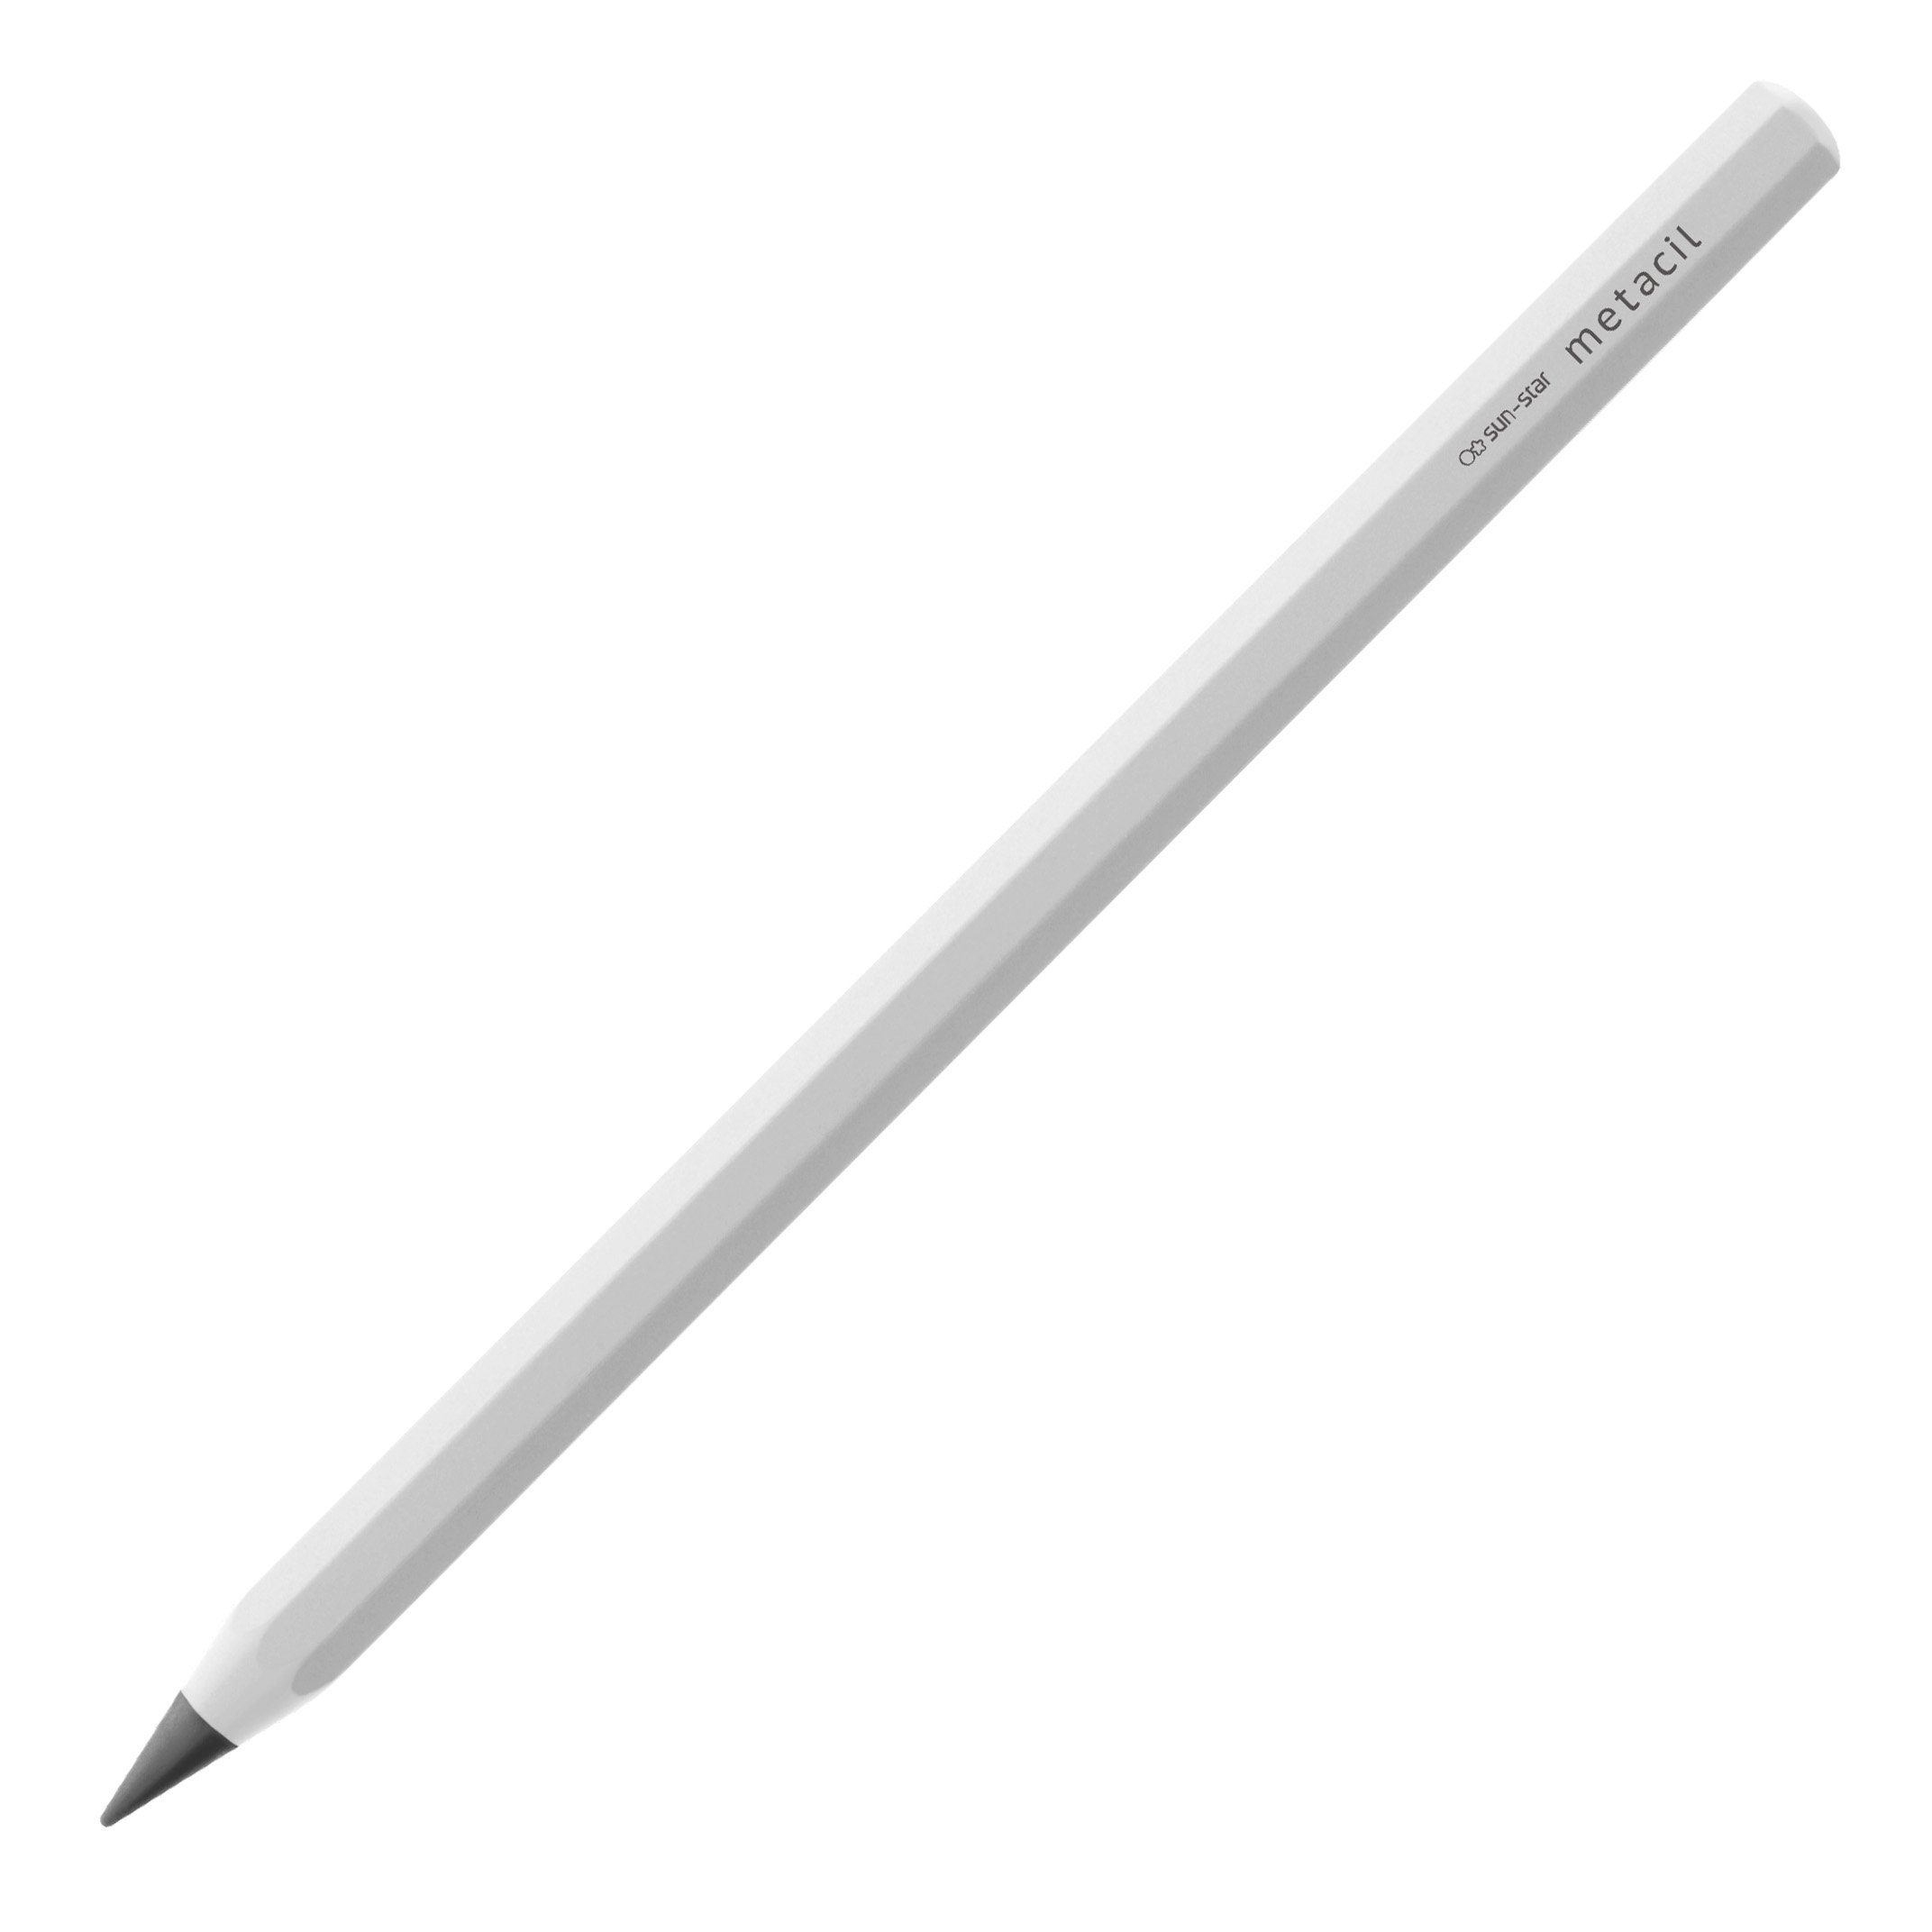 サンスター文具 サンスター文具 メタルペンシル メタシル （ホワイト） S4541138 ×1セット 鉛筆の商品画像